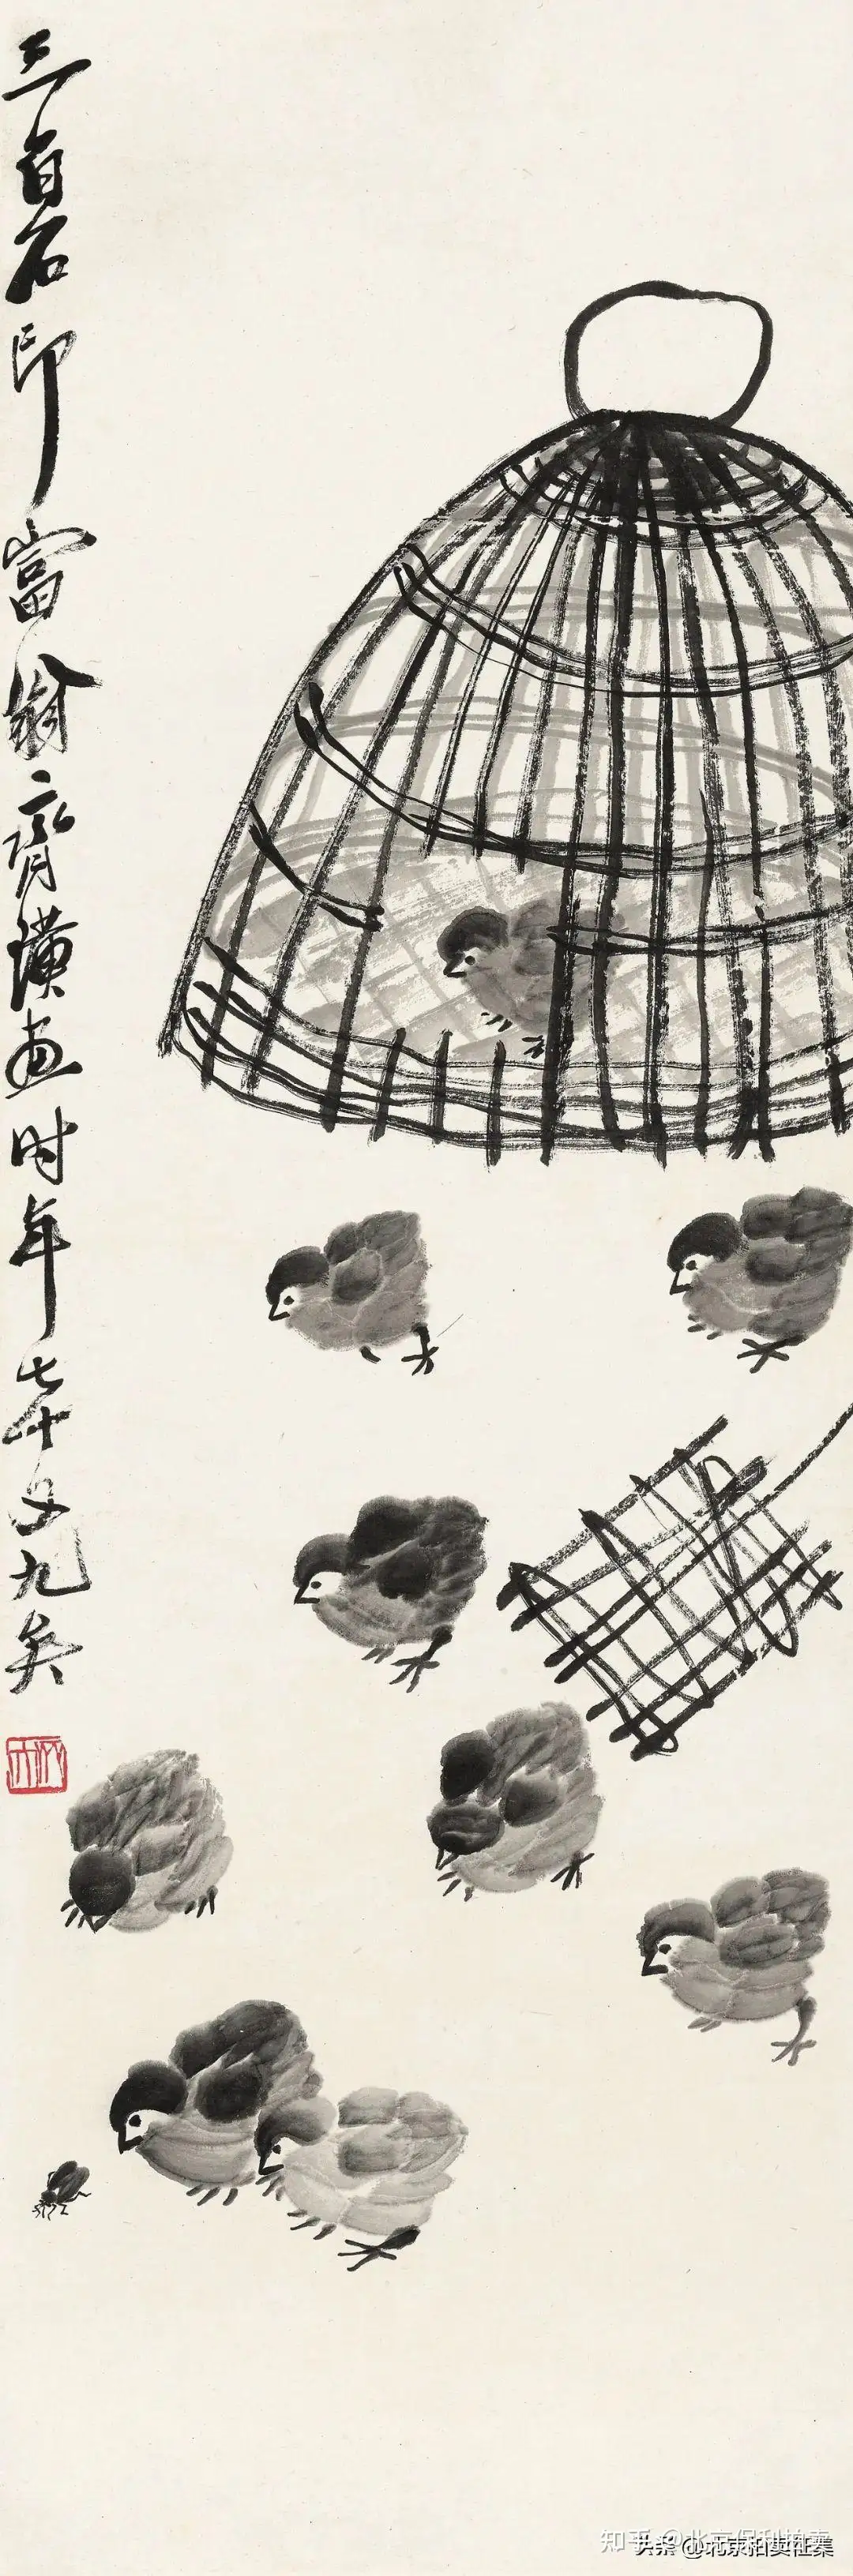 北京保利书画拍卖南张北齐早期出版作品选珍- 知乎